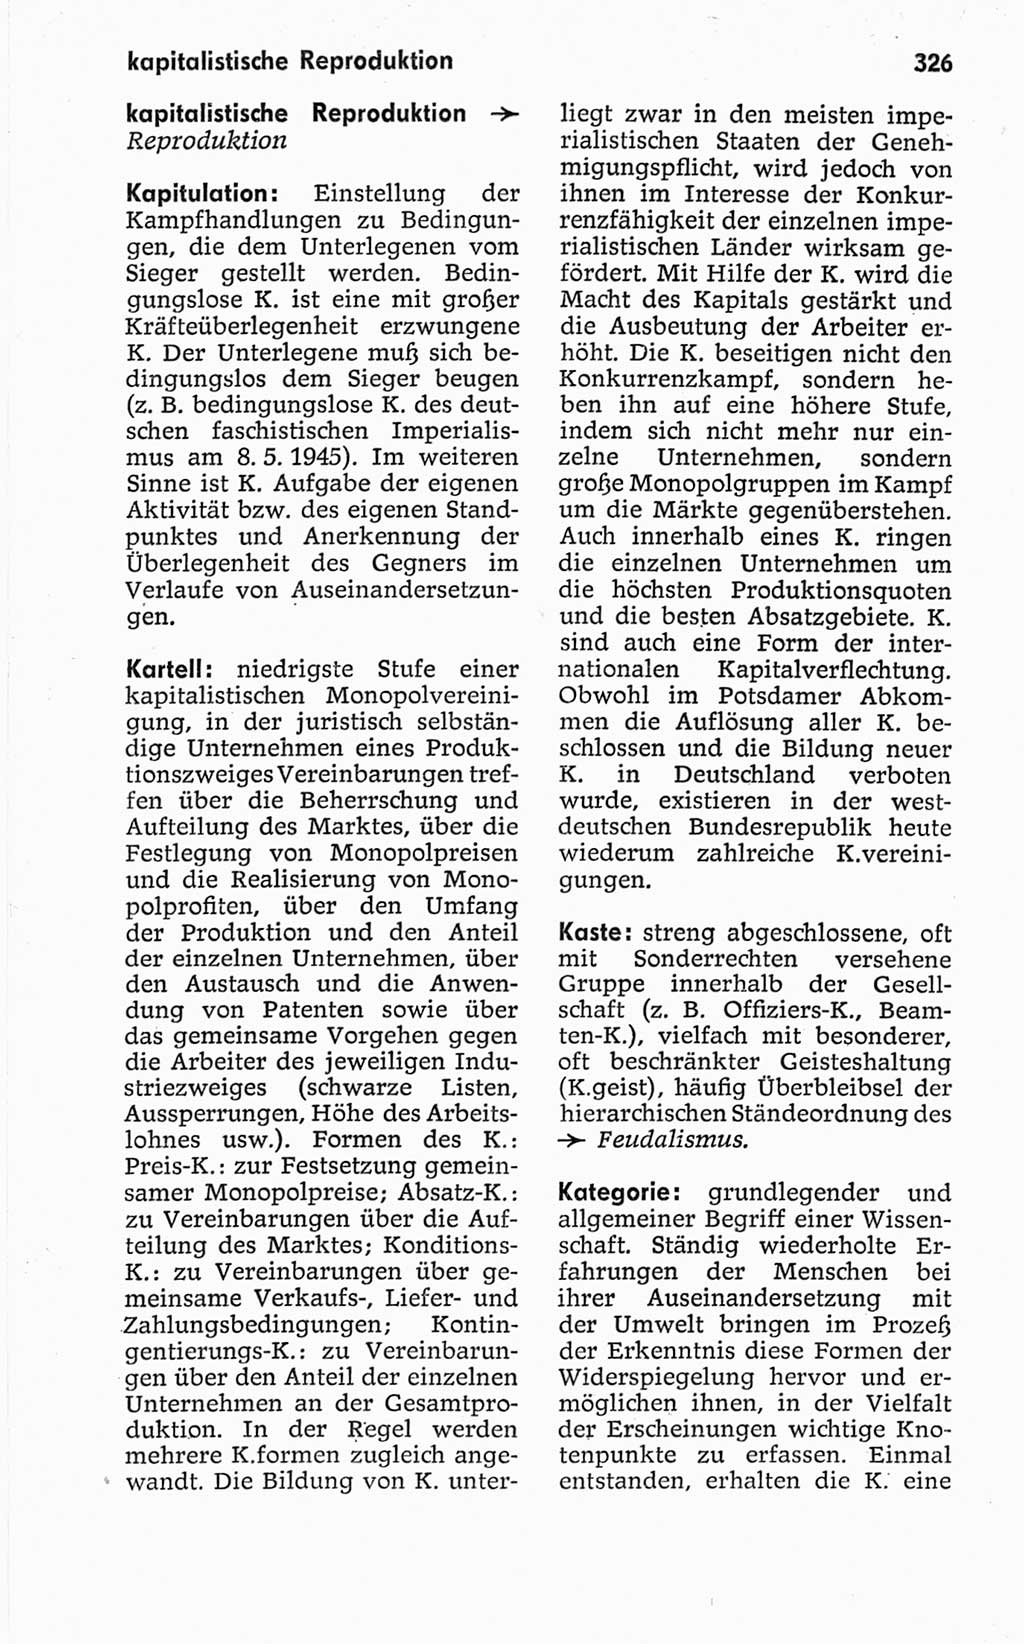 Kleines politisches Wörterbuch [Deutsche Demokratische Republik (DDR)] 1967, Seite 326 (Kl. pol. Wb. DDR 1967, S. 326)